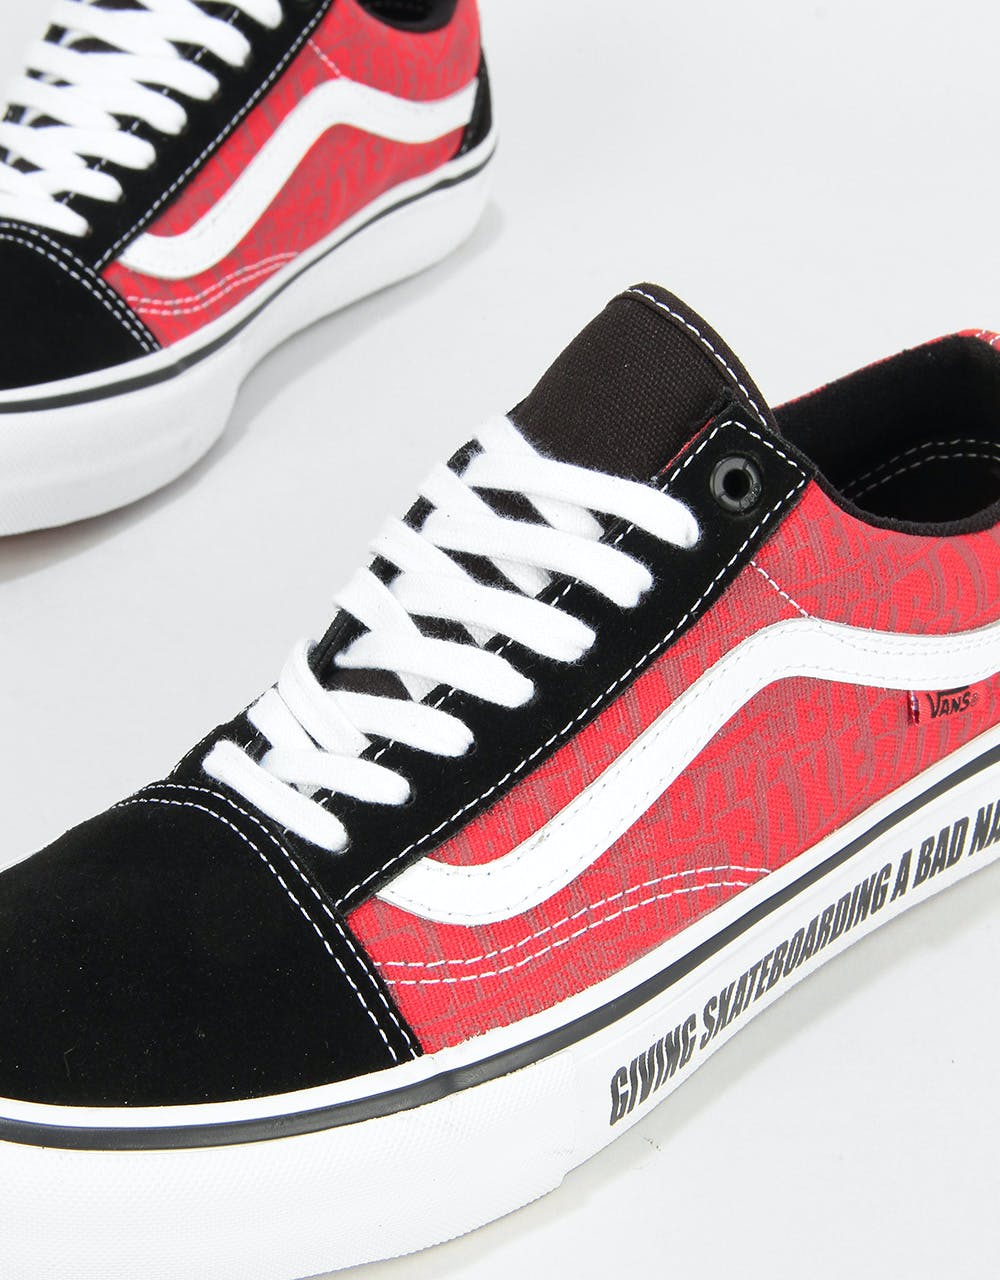 Vans Old Skool Pro Skate Shoes - (Baker) Black/White/Red